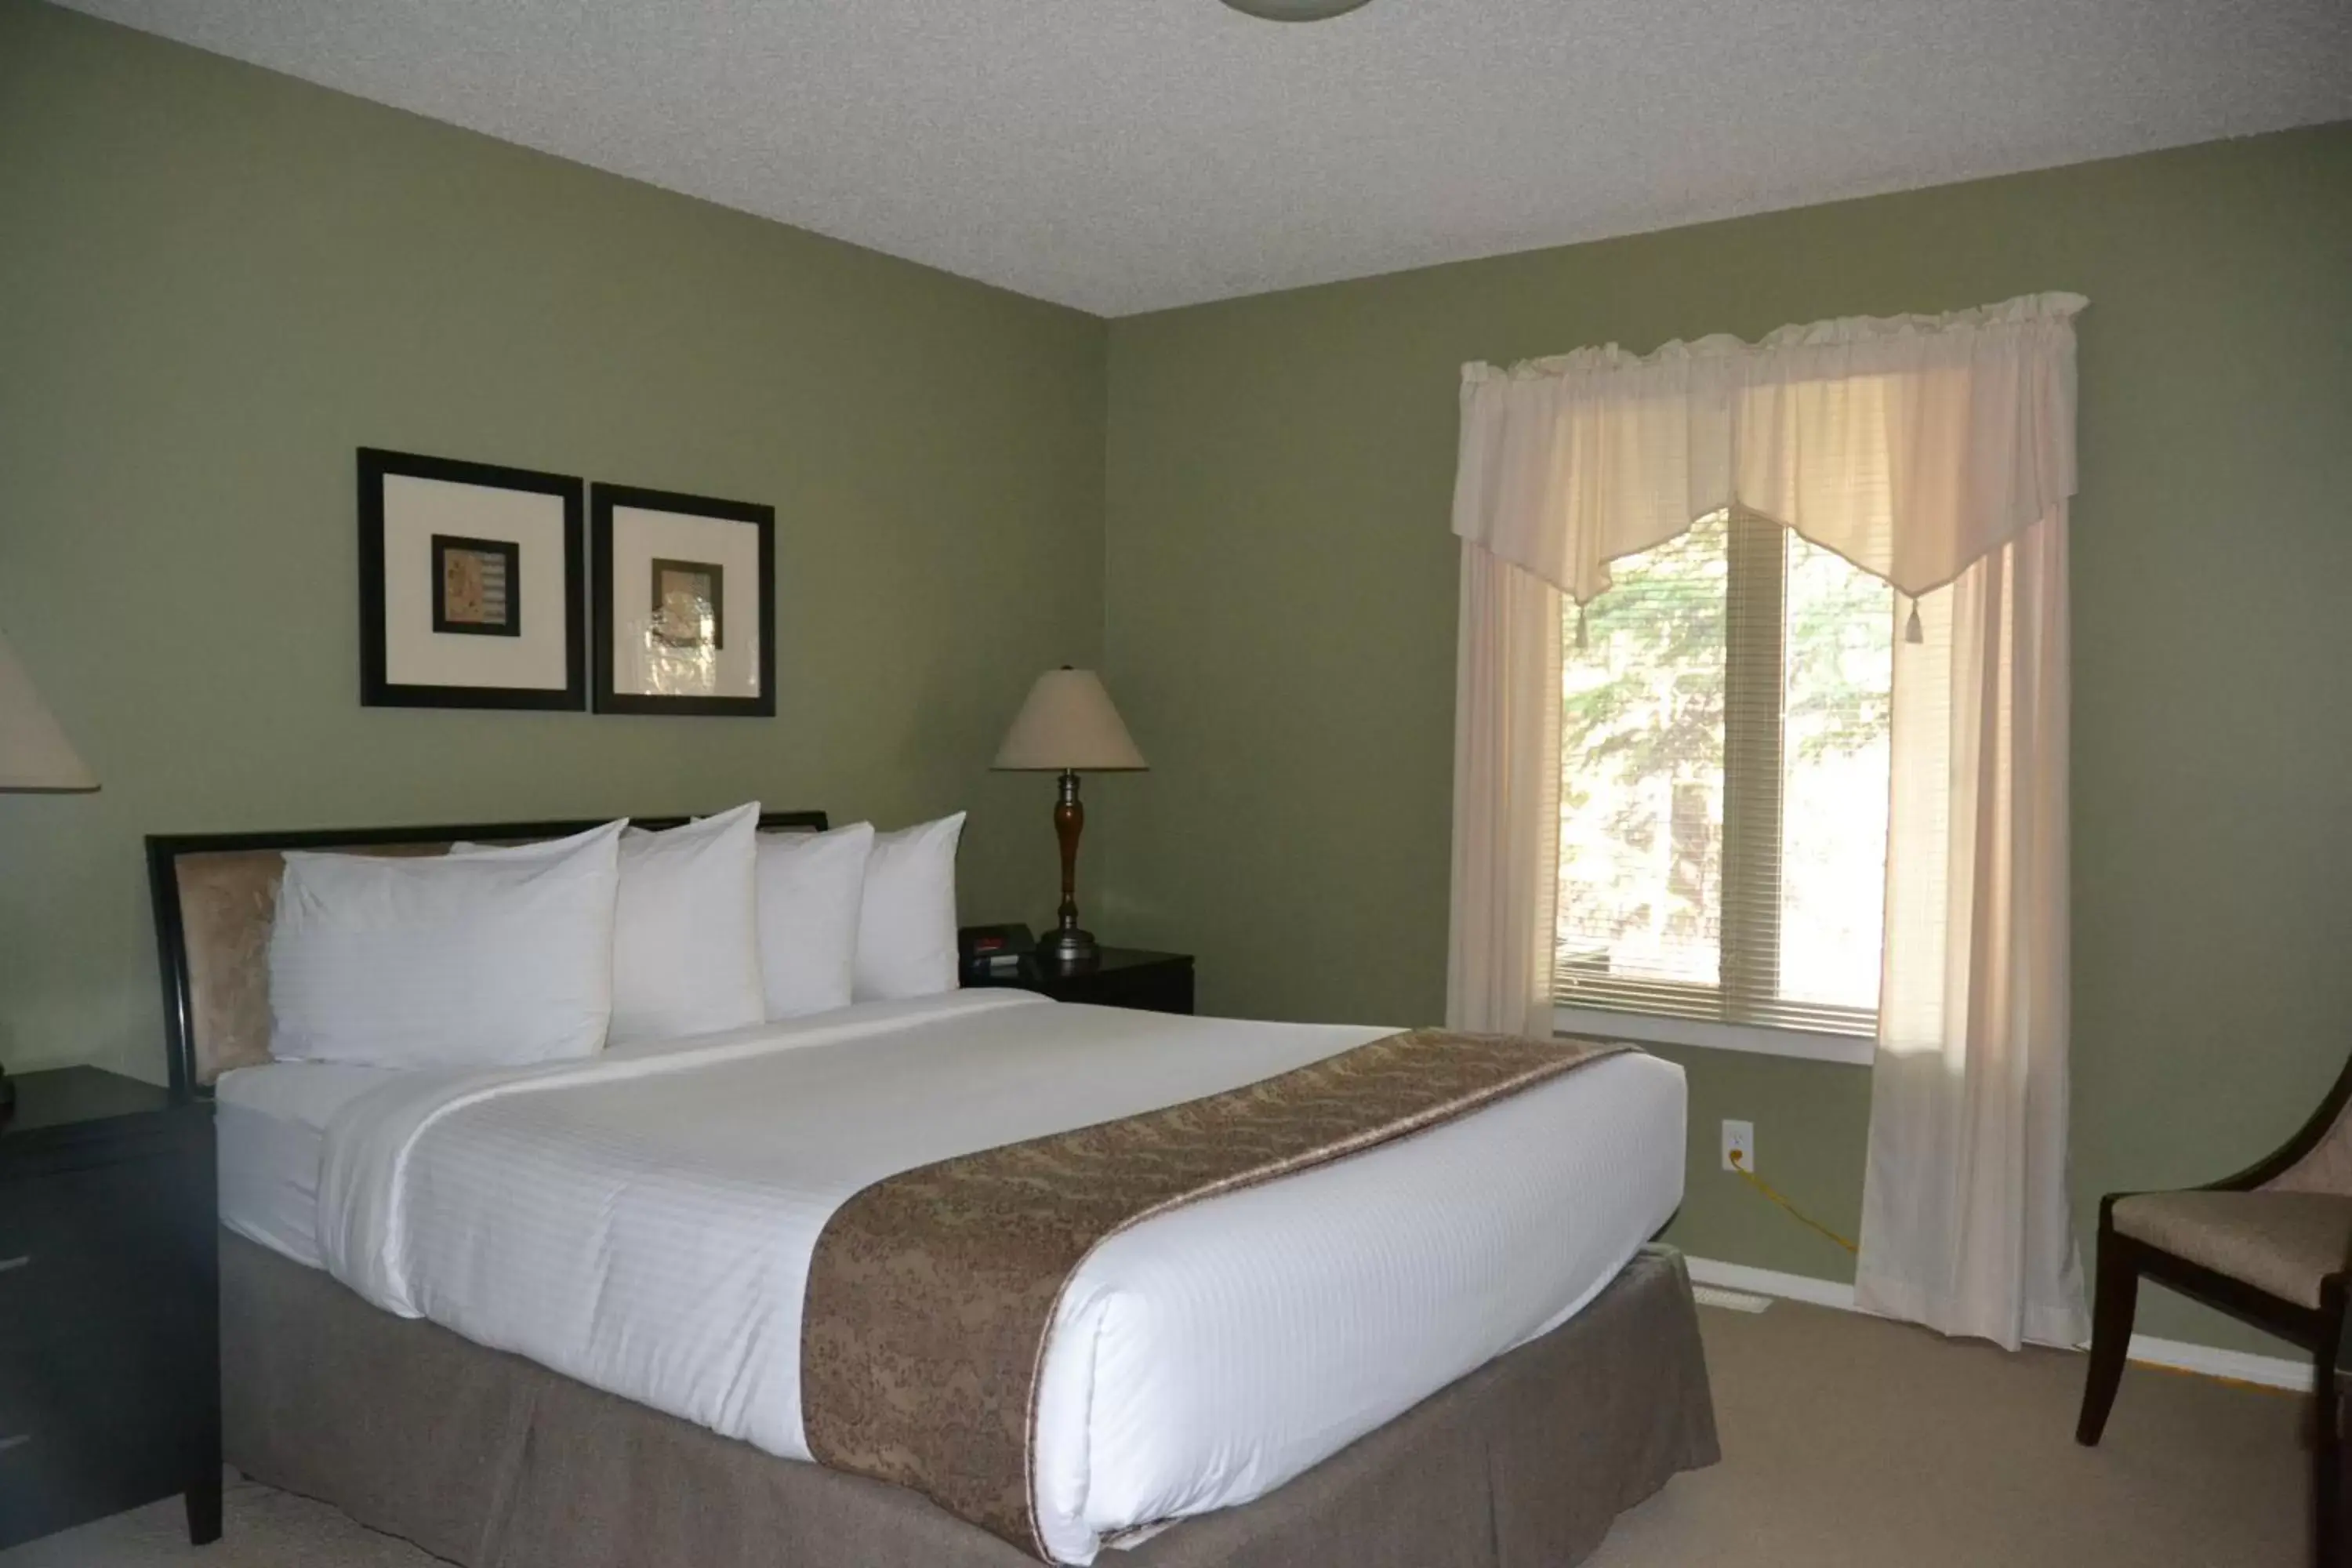 Bedroom, Room Photo in Village Creek Country Inn